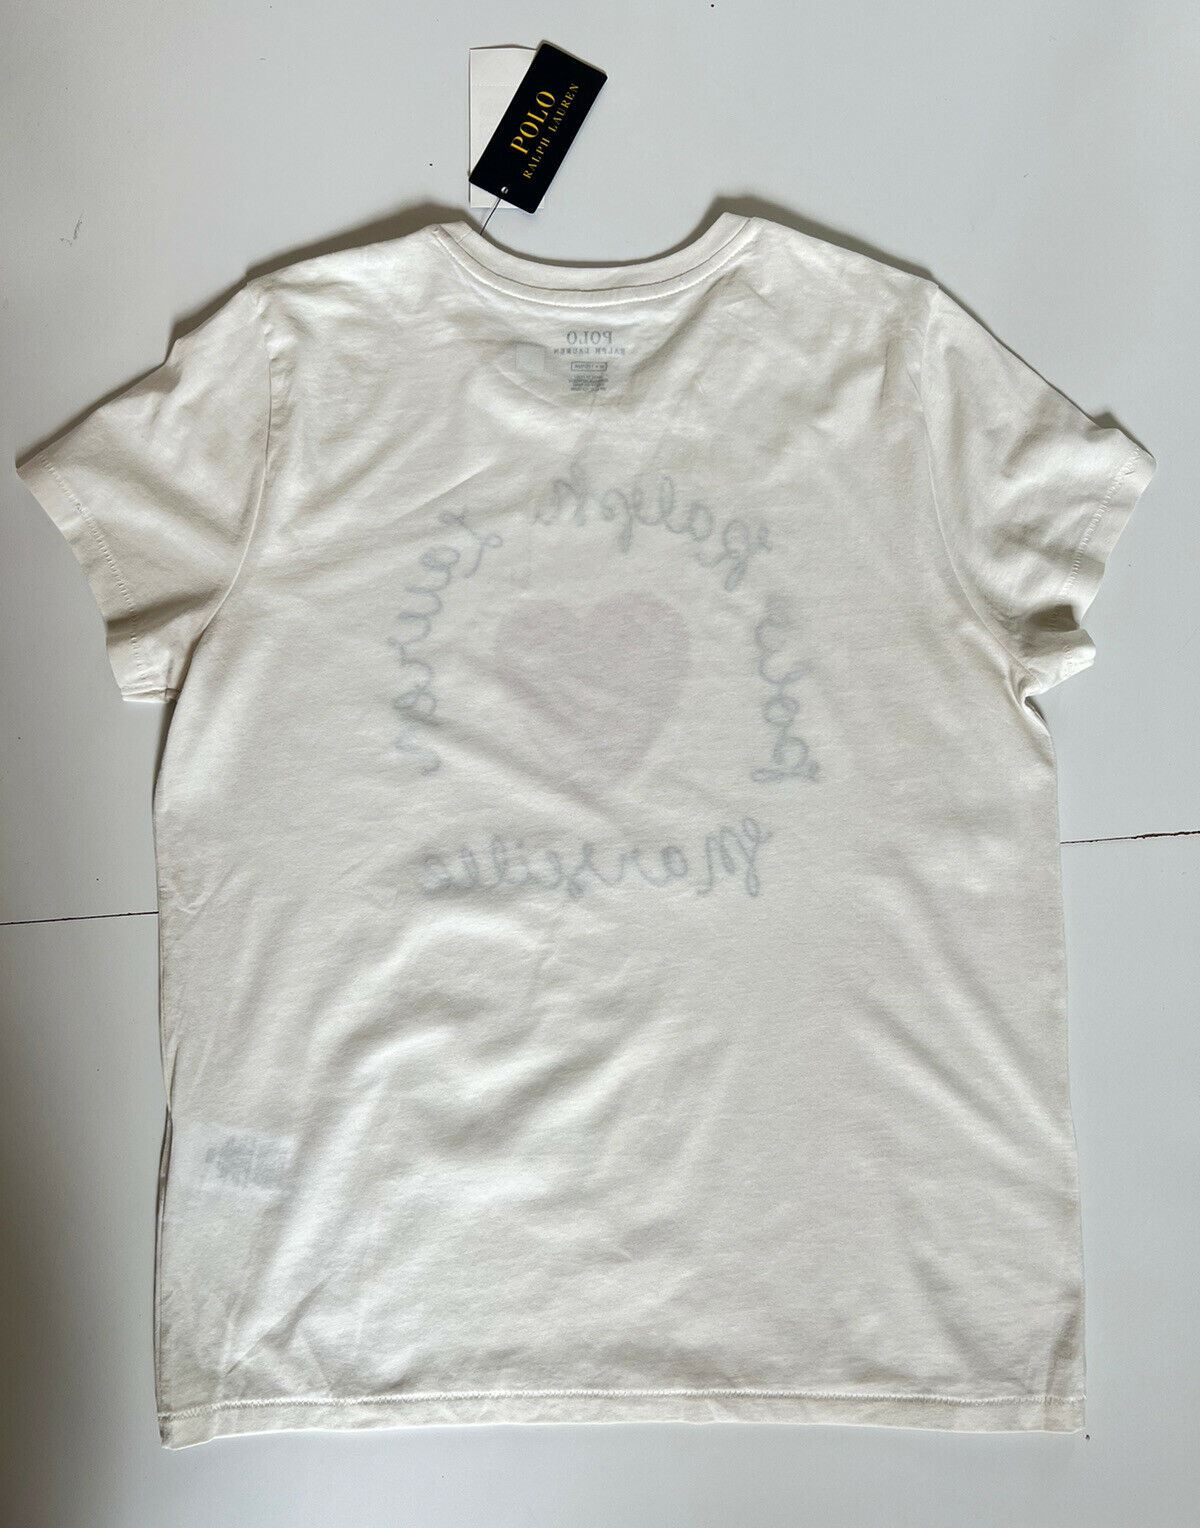 Женская футболка Polo Ralph Lauren Heart, белая, средний размер, NWT 78 долларов США